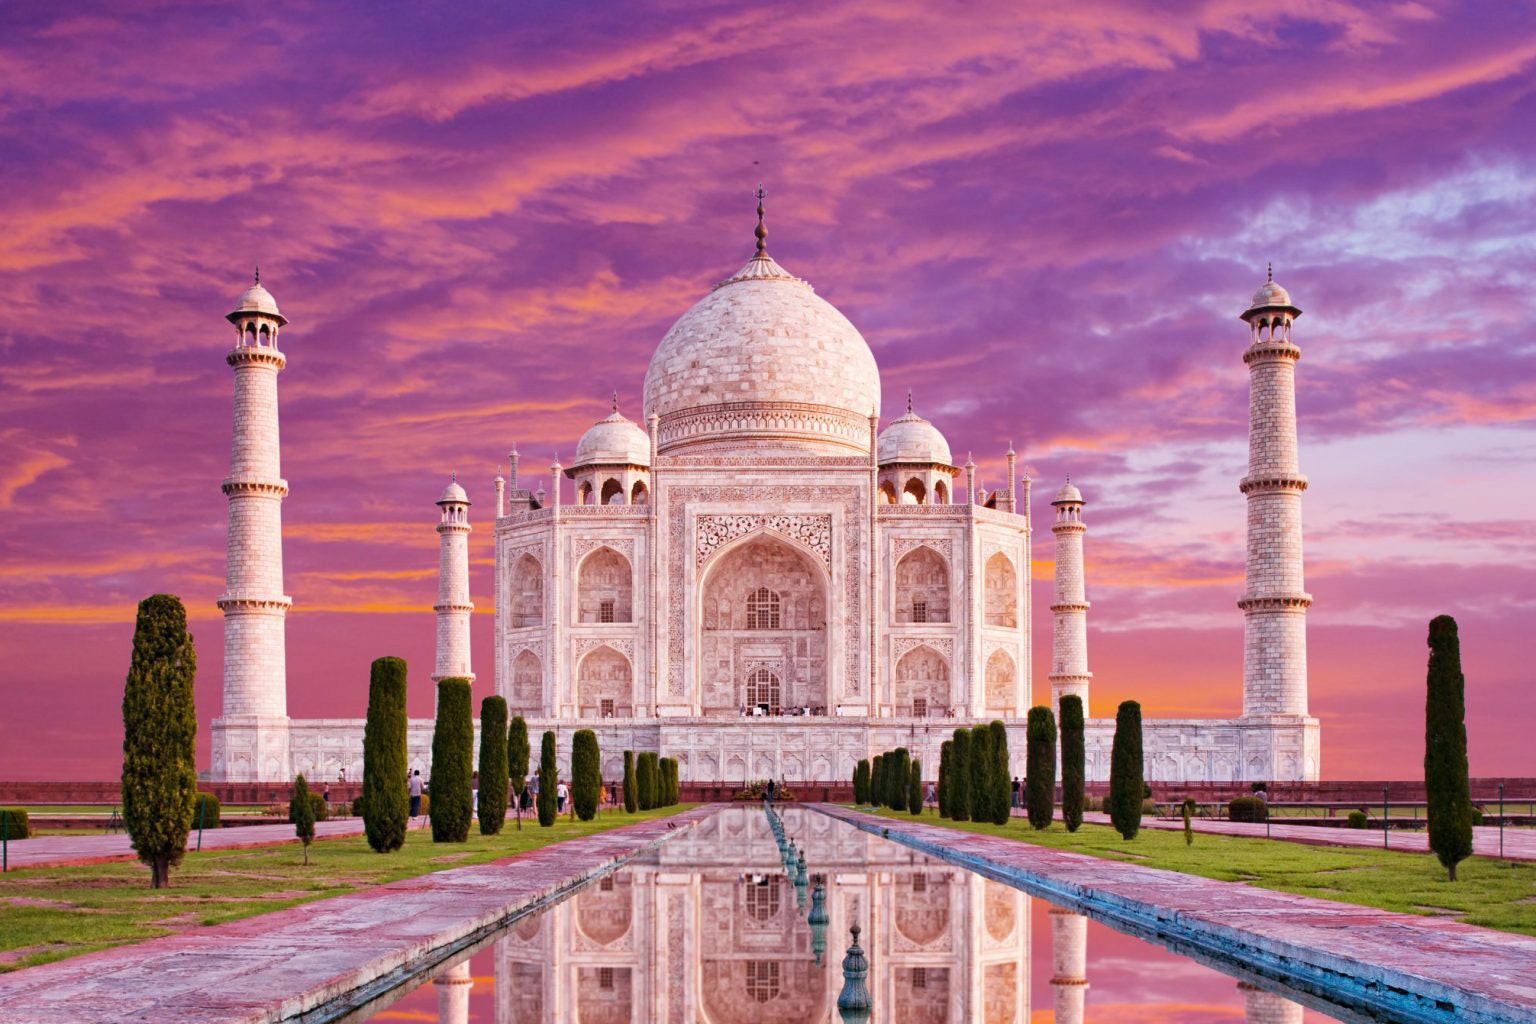 Taj Mahal - A wonder of the world